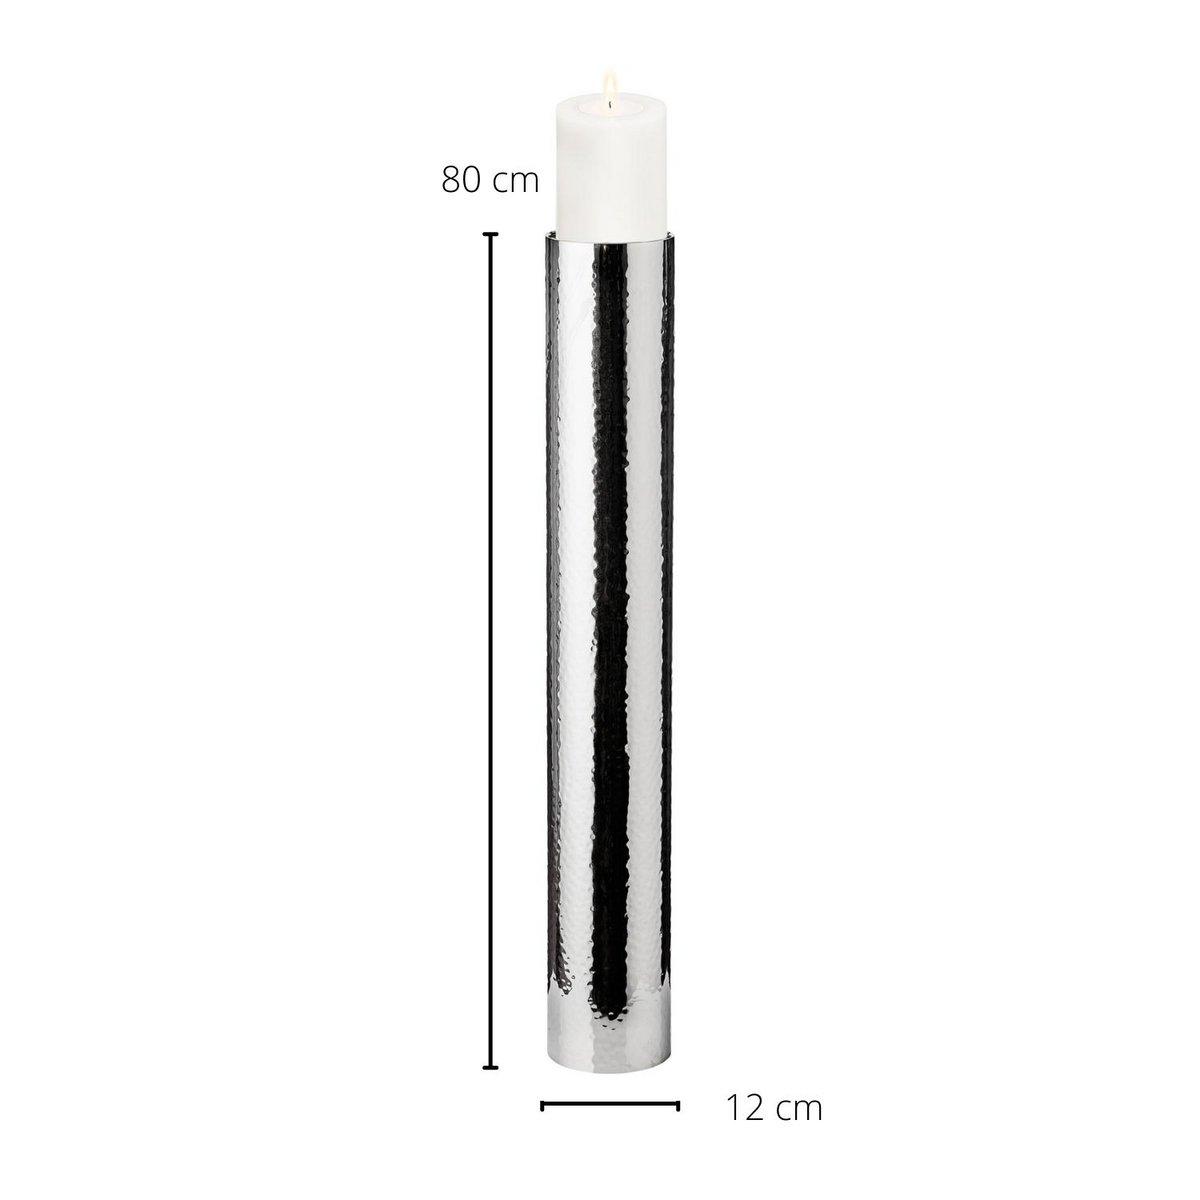 EDZARD Kerzenständer Boston für Kerze Durchmesser 10 cm, gehämmert, Edelstahl glänzend vernickelt, H 83 cm - HomeDesign Knaus